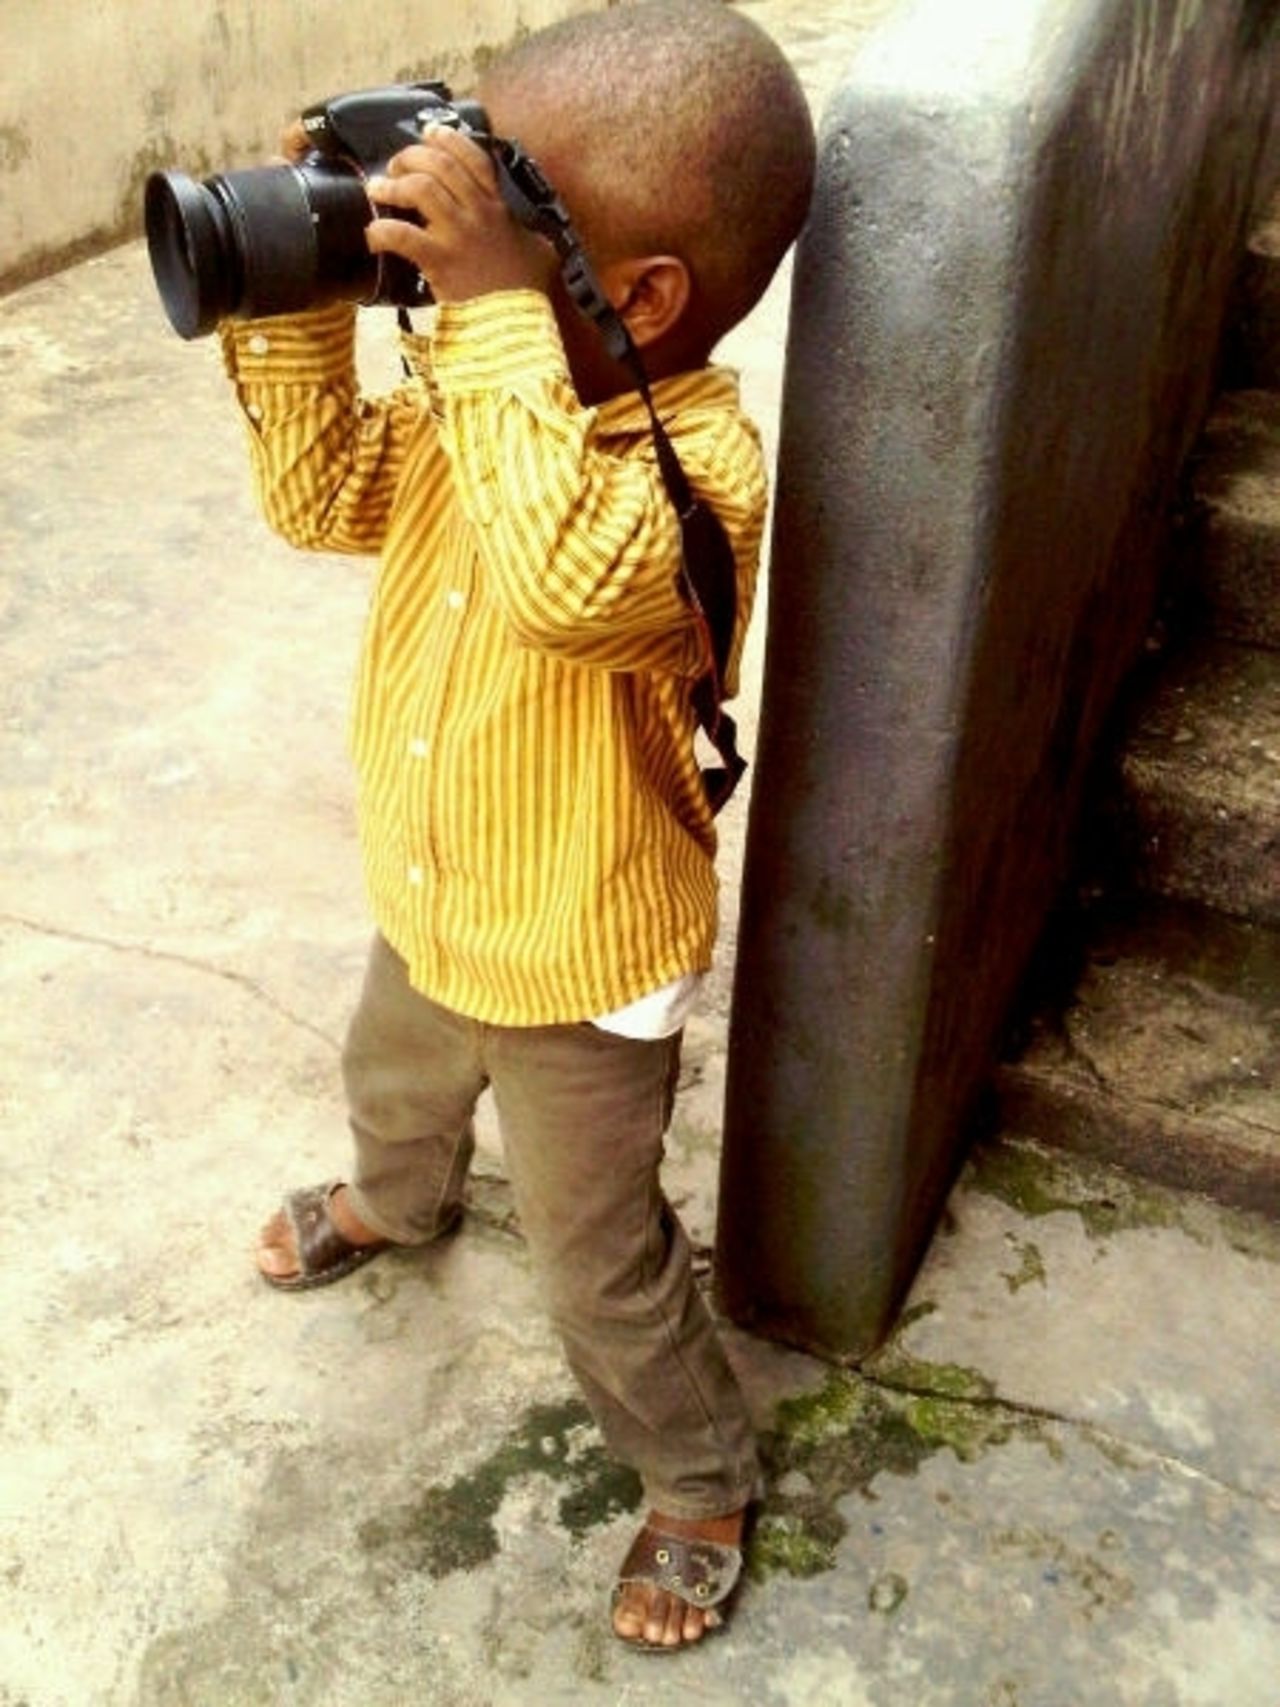 El talentoso niño disfruta capturar paisajes, retratos y la vida cotidiana de Lagos, Nigeria.